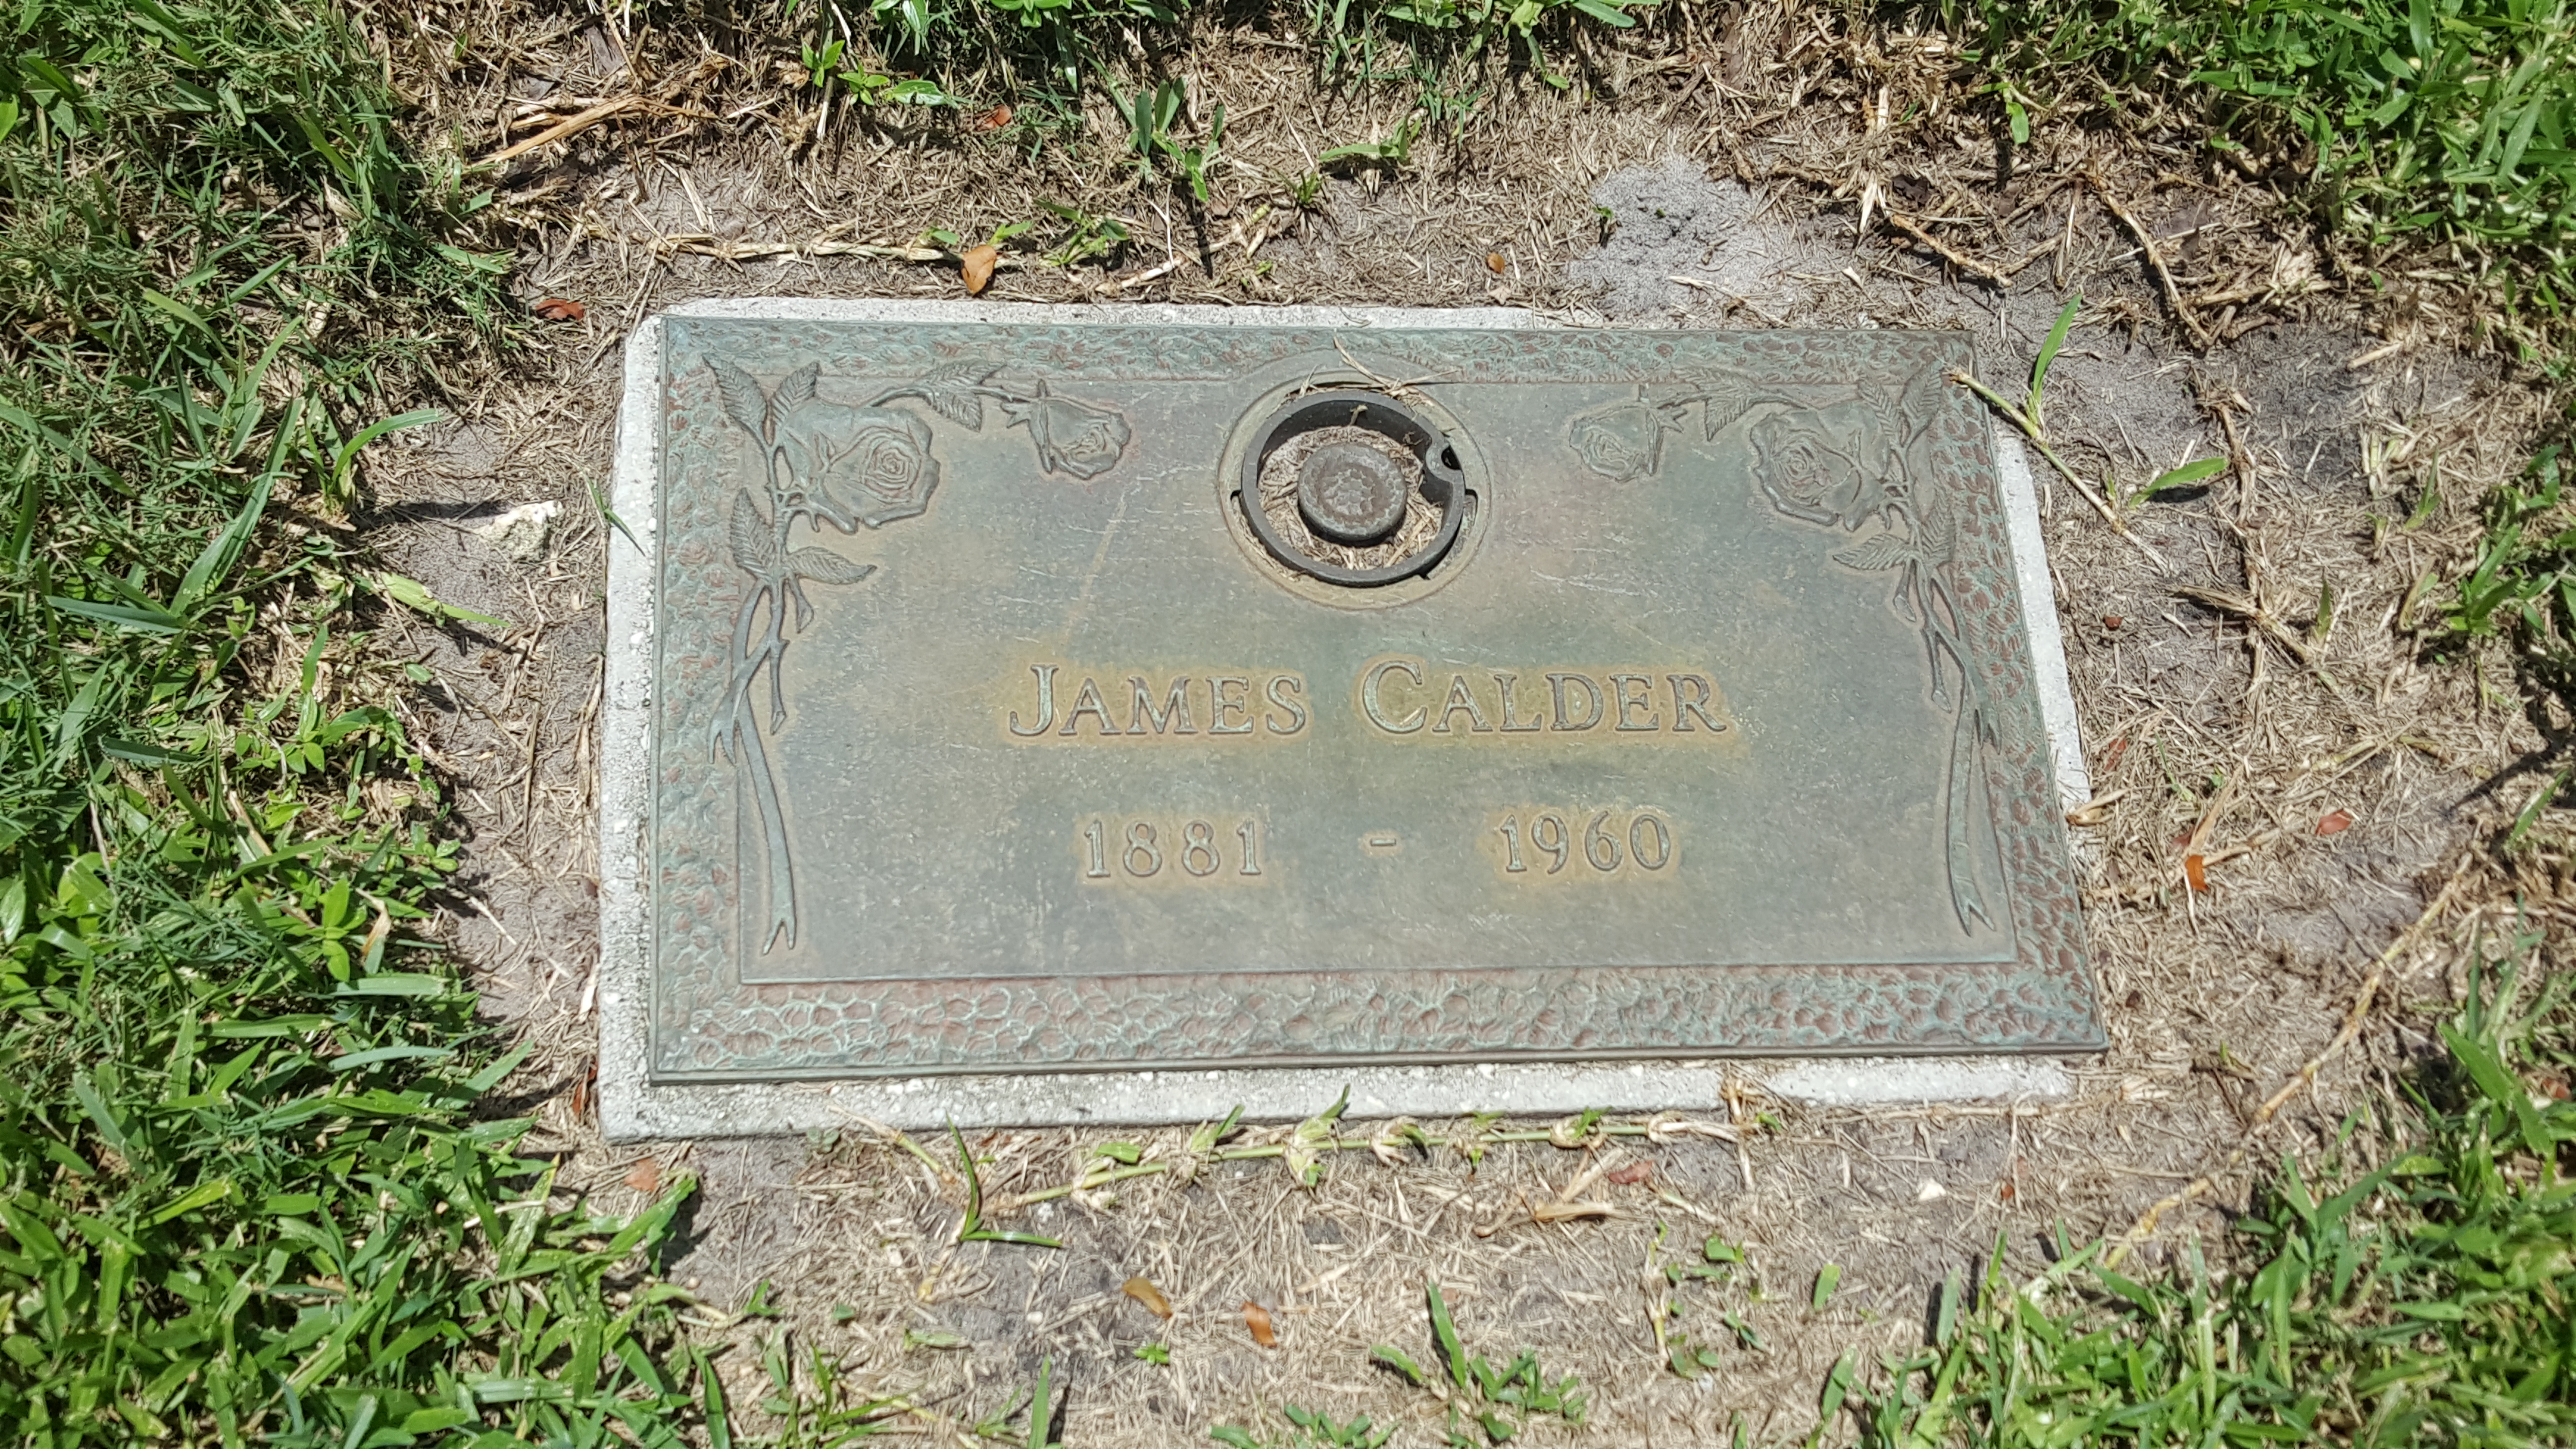 James Calder